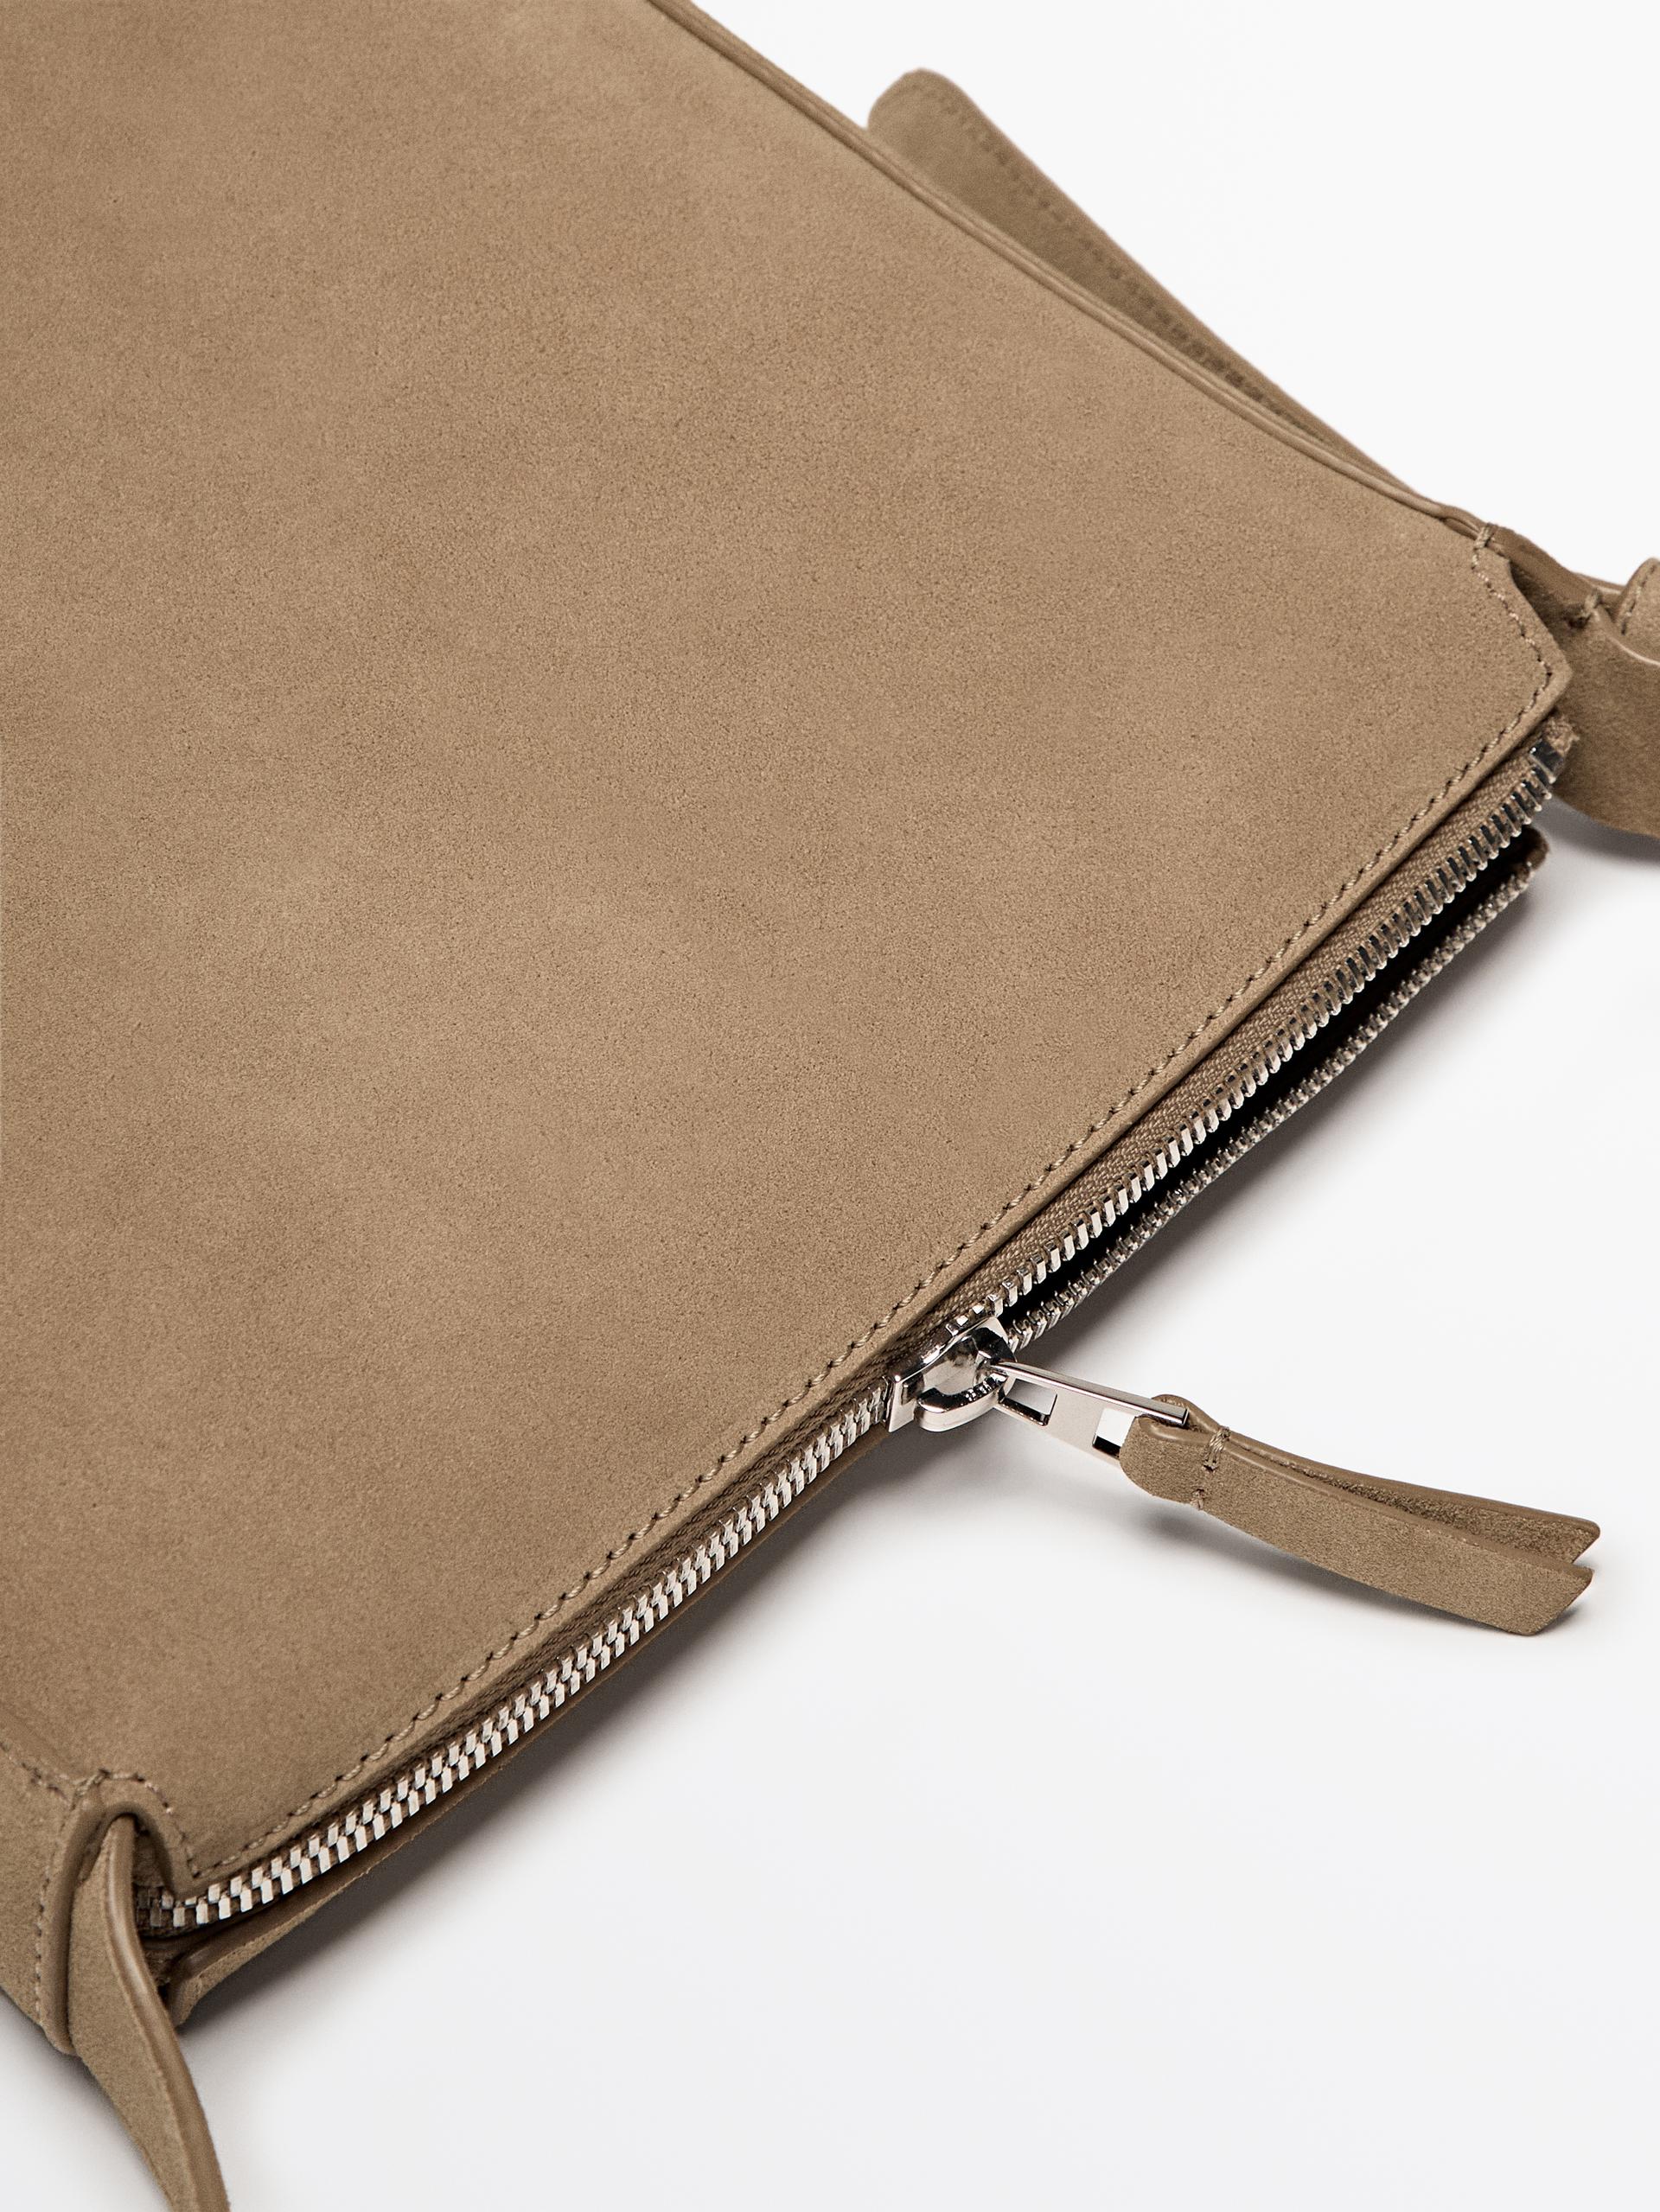 Adjustable split leather crossbody bag ZARA